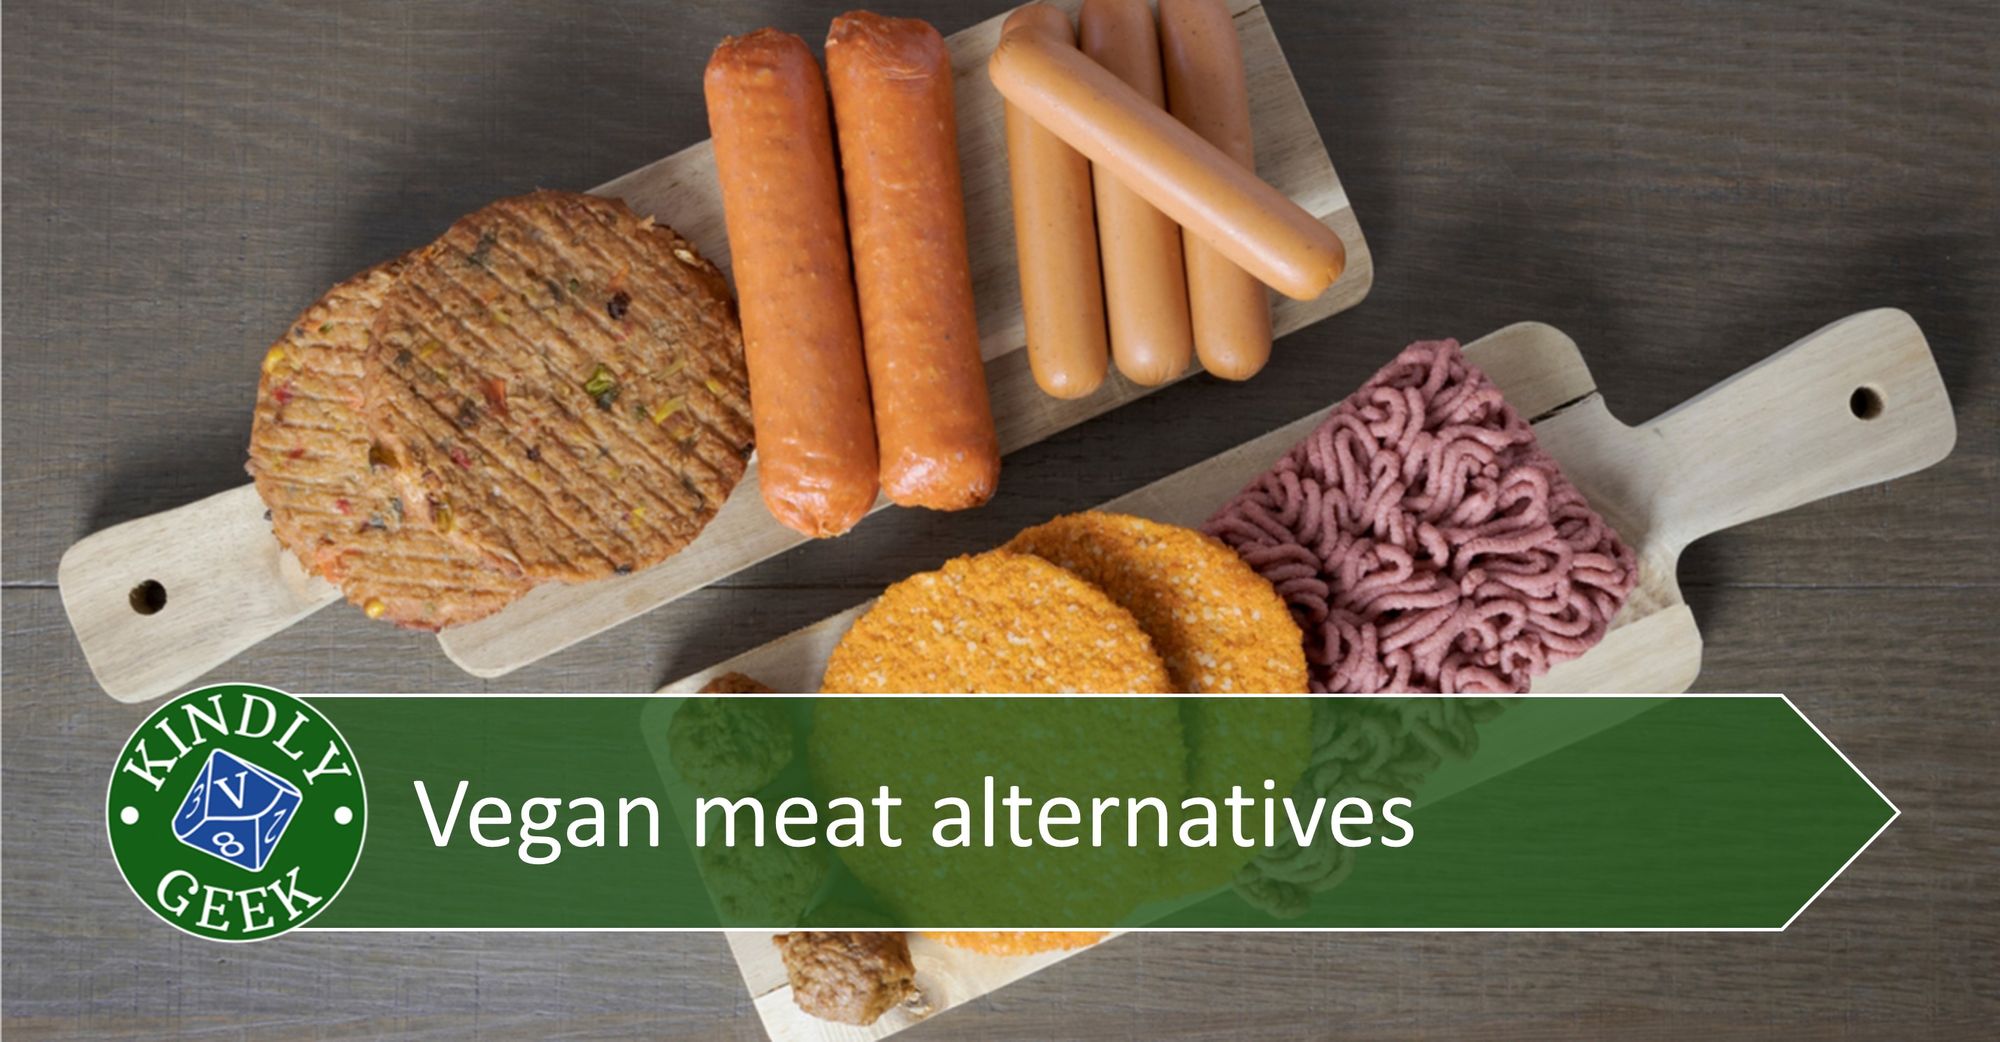 Vegan Meat Alternatives Kindly Geek 7915